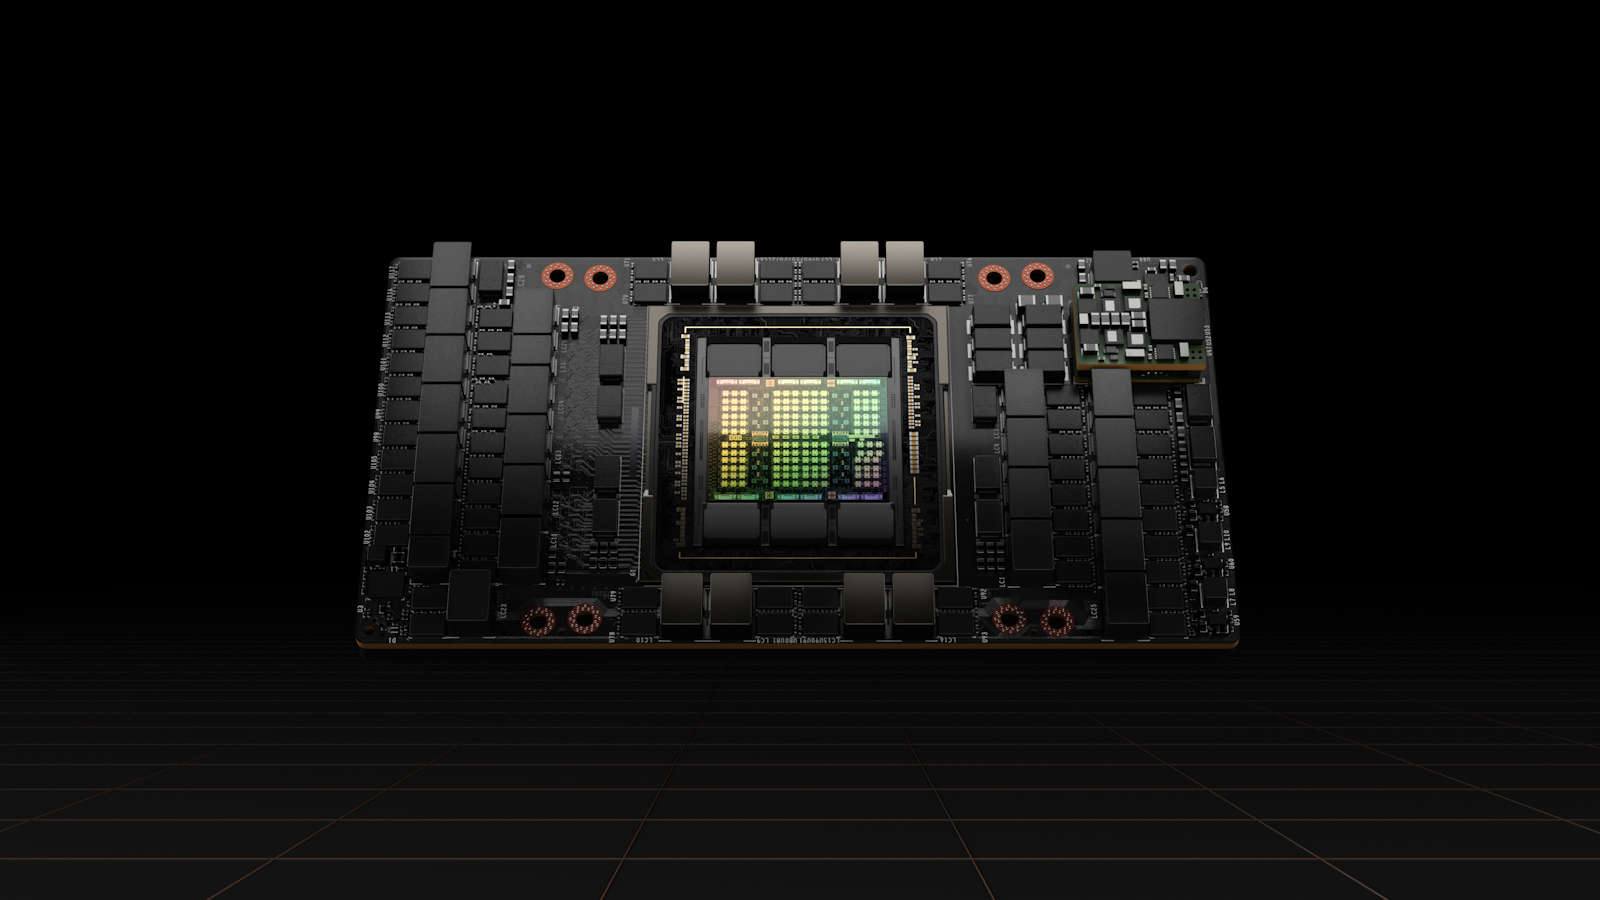 Nvidia's H100 SXM. (Courtesy of NVIDIA)